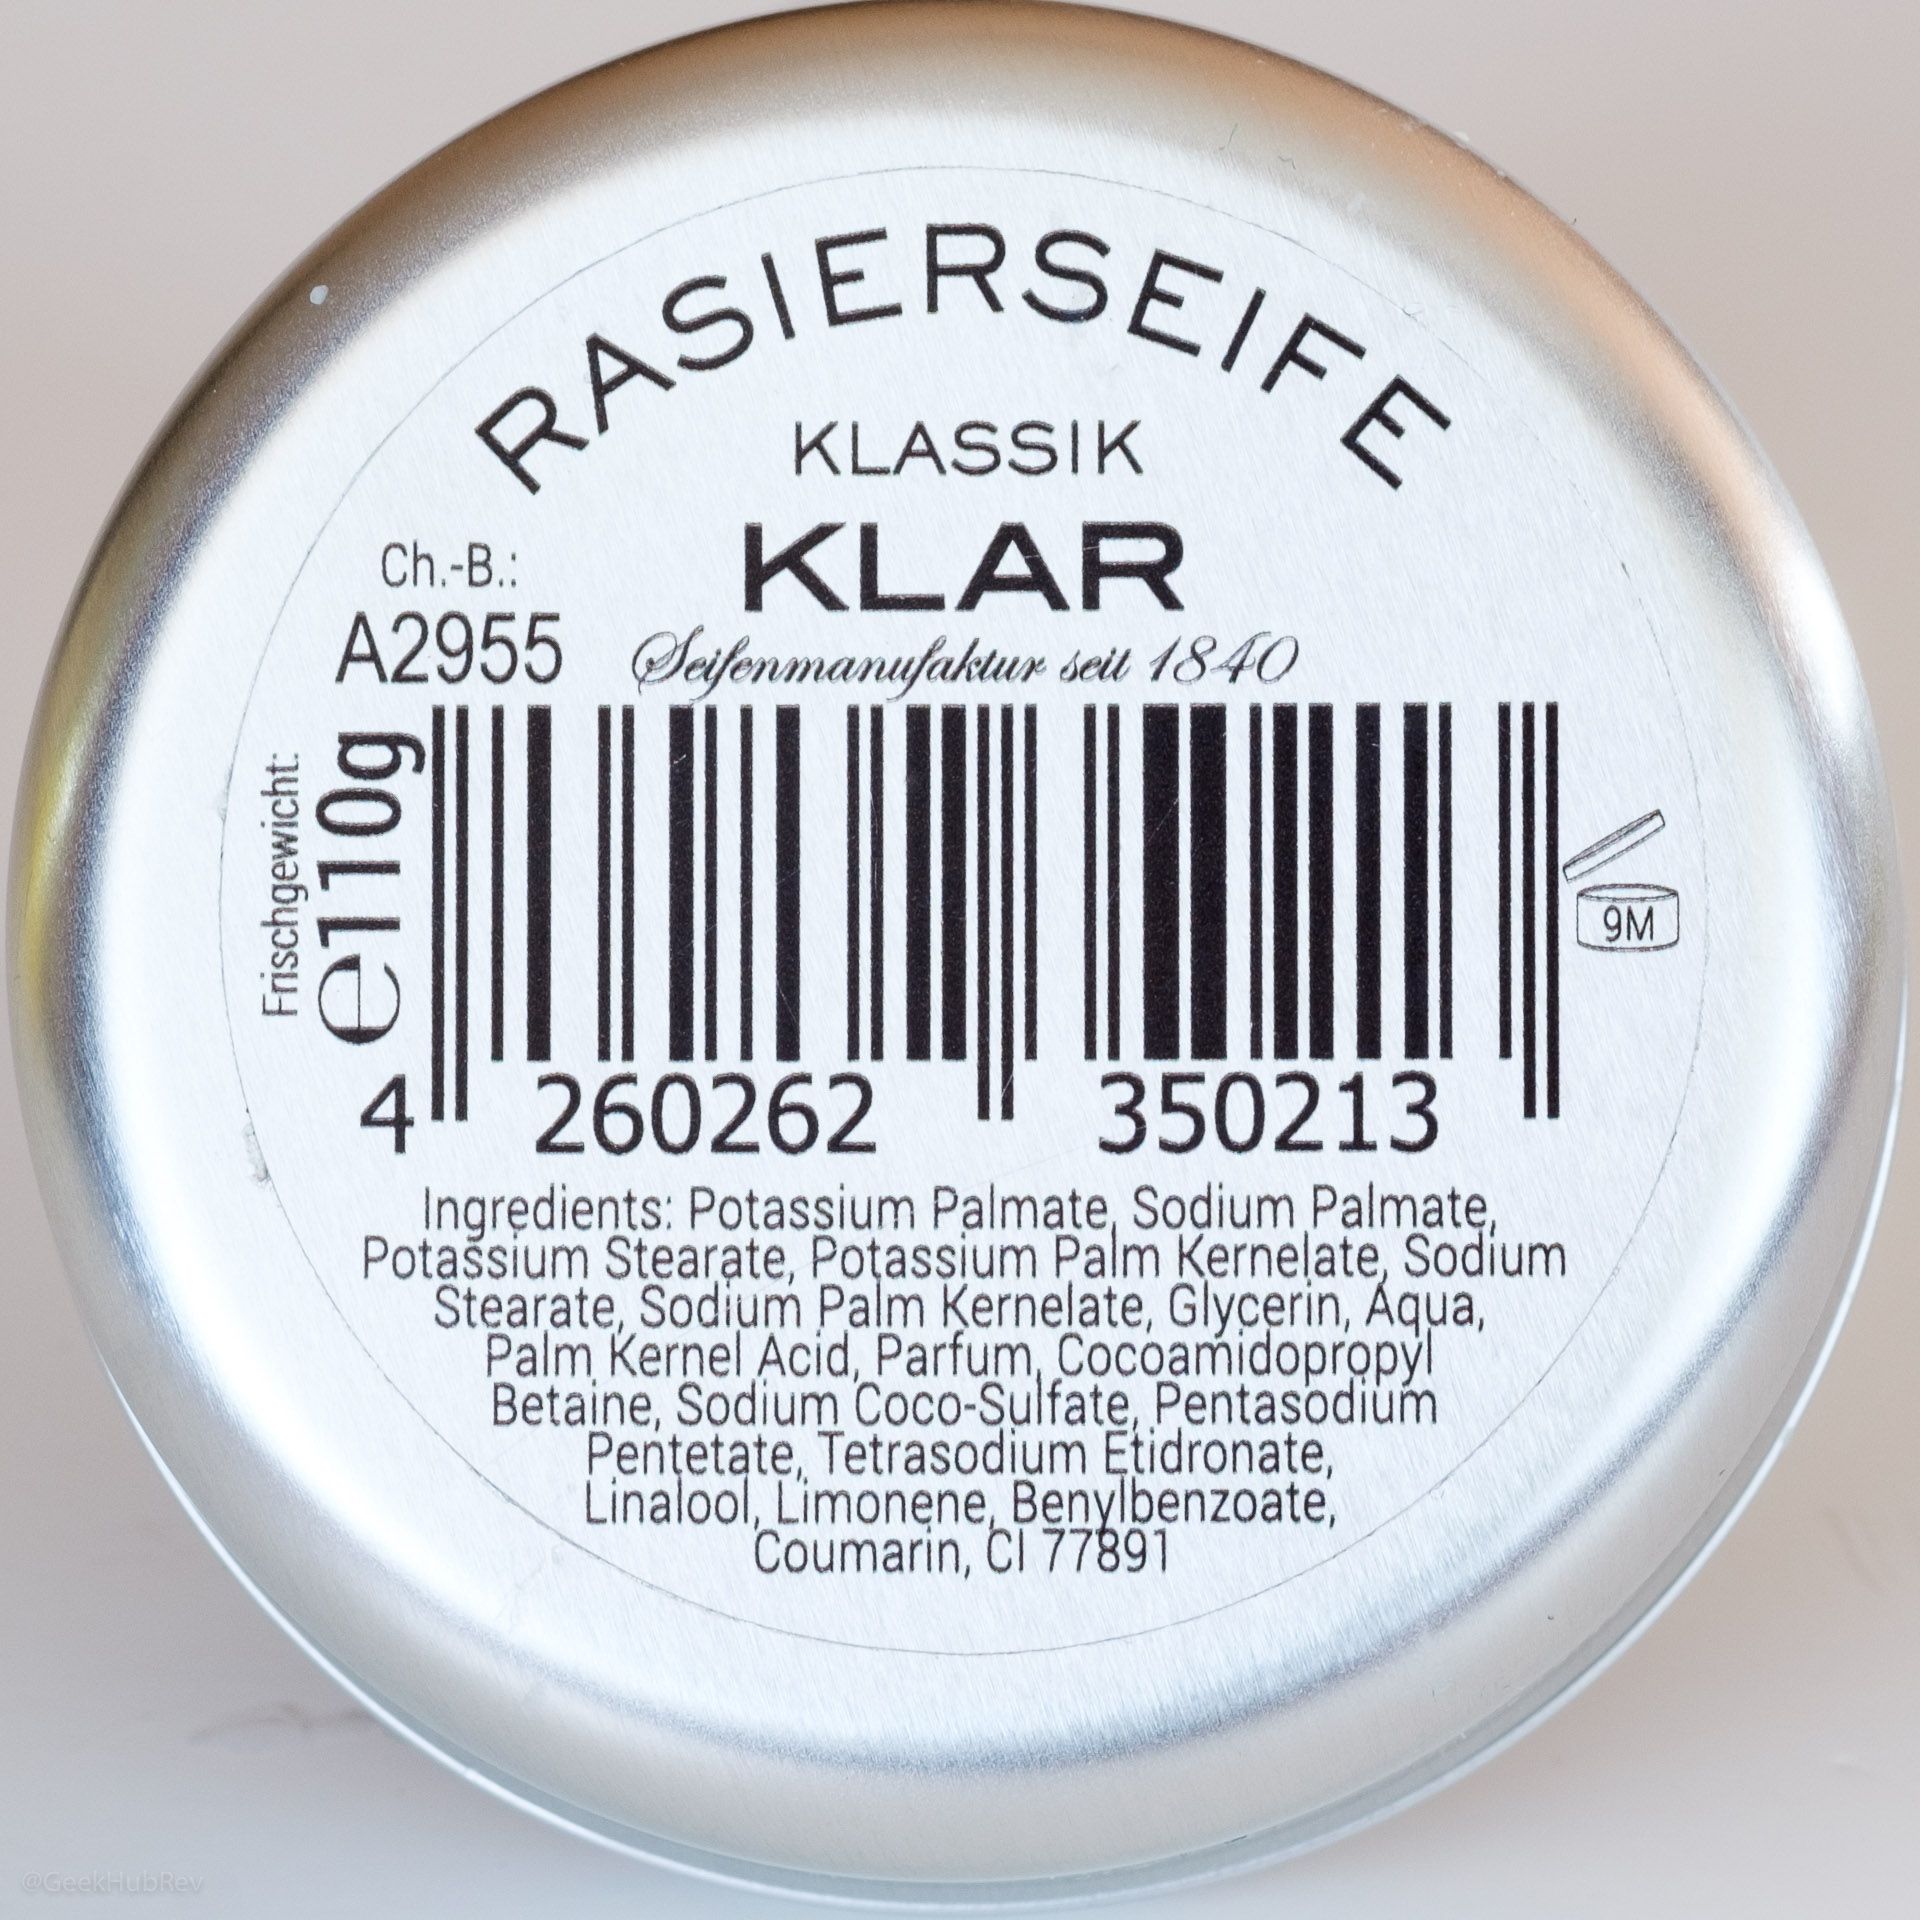 Skład mydła do golenia Klar Rasierseife Klassik (INCI ingredients)